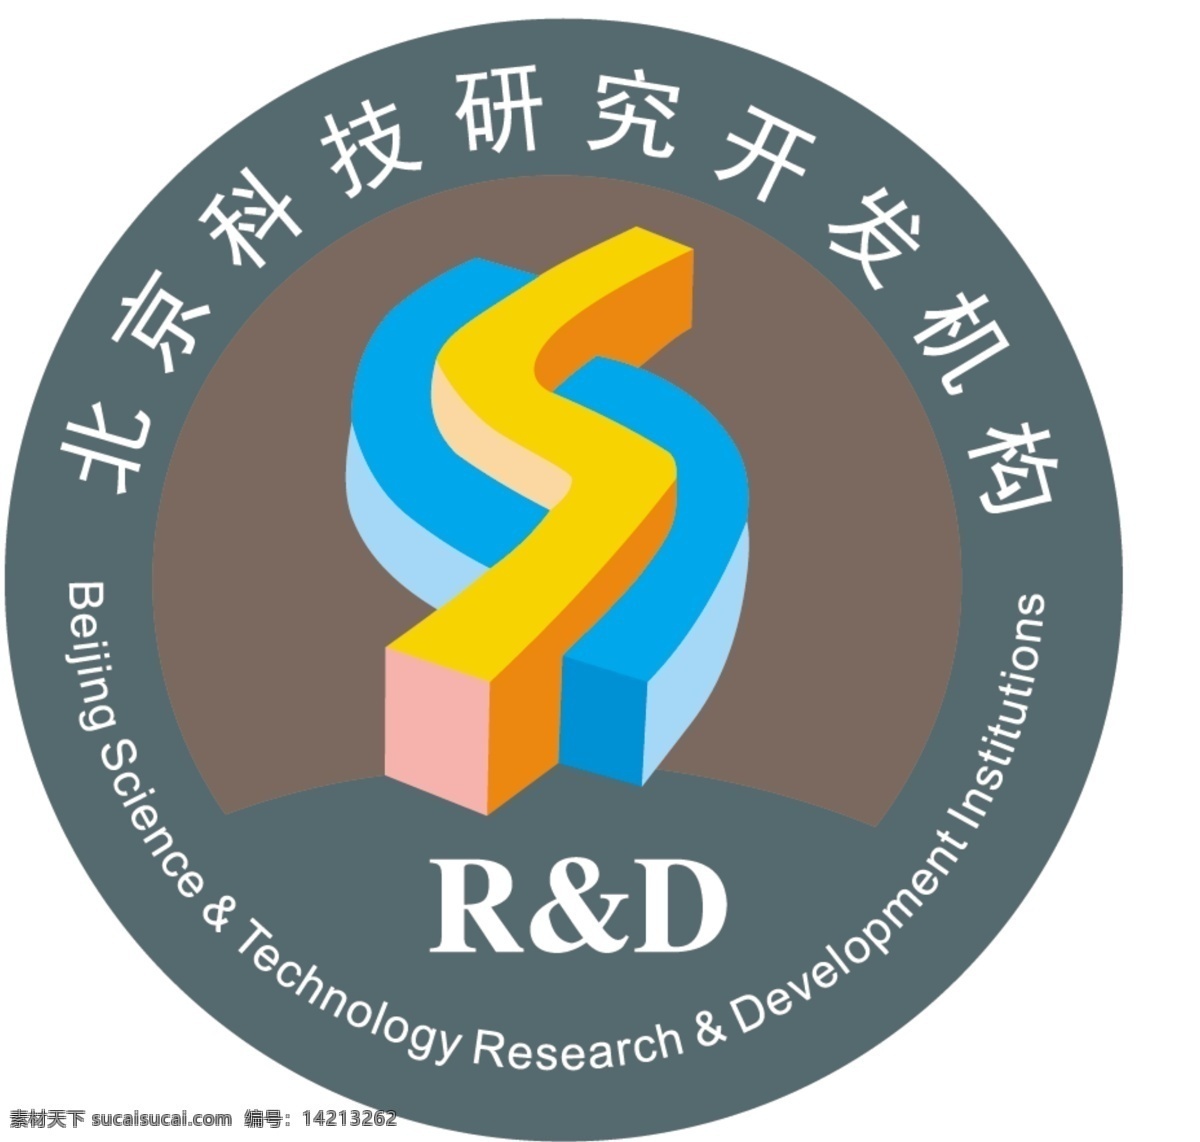 北京 科技 研究开发 机构 开发 科技研究 标志图标 企业 logo 标志